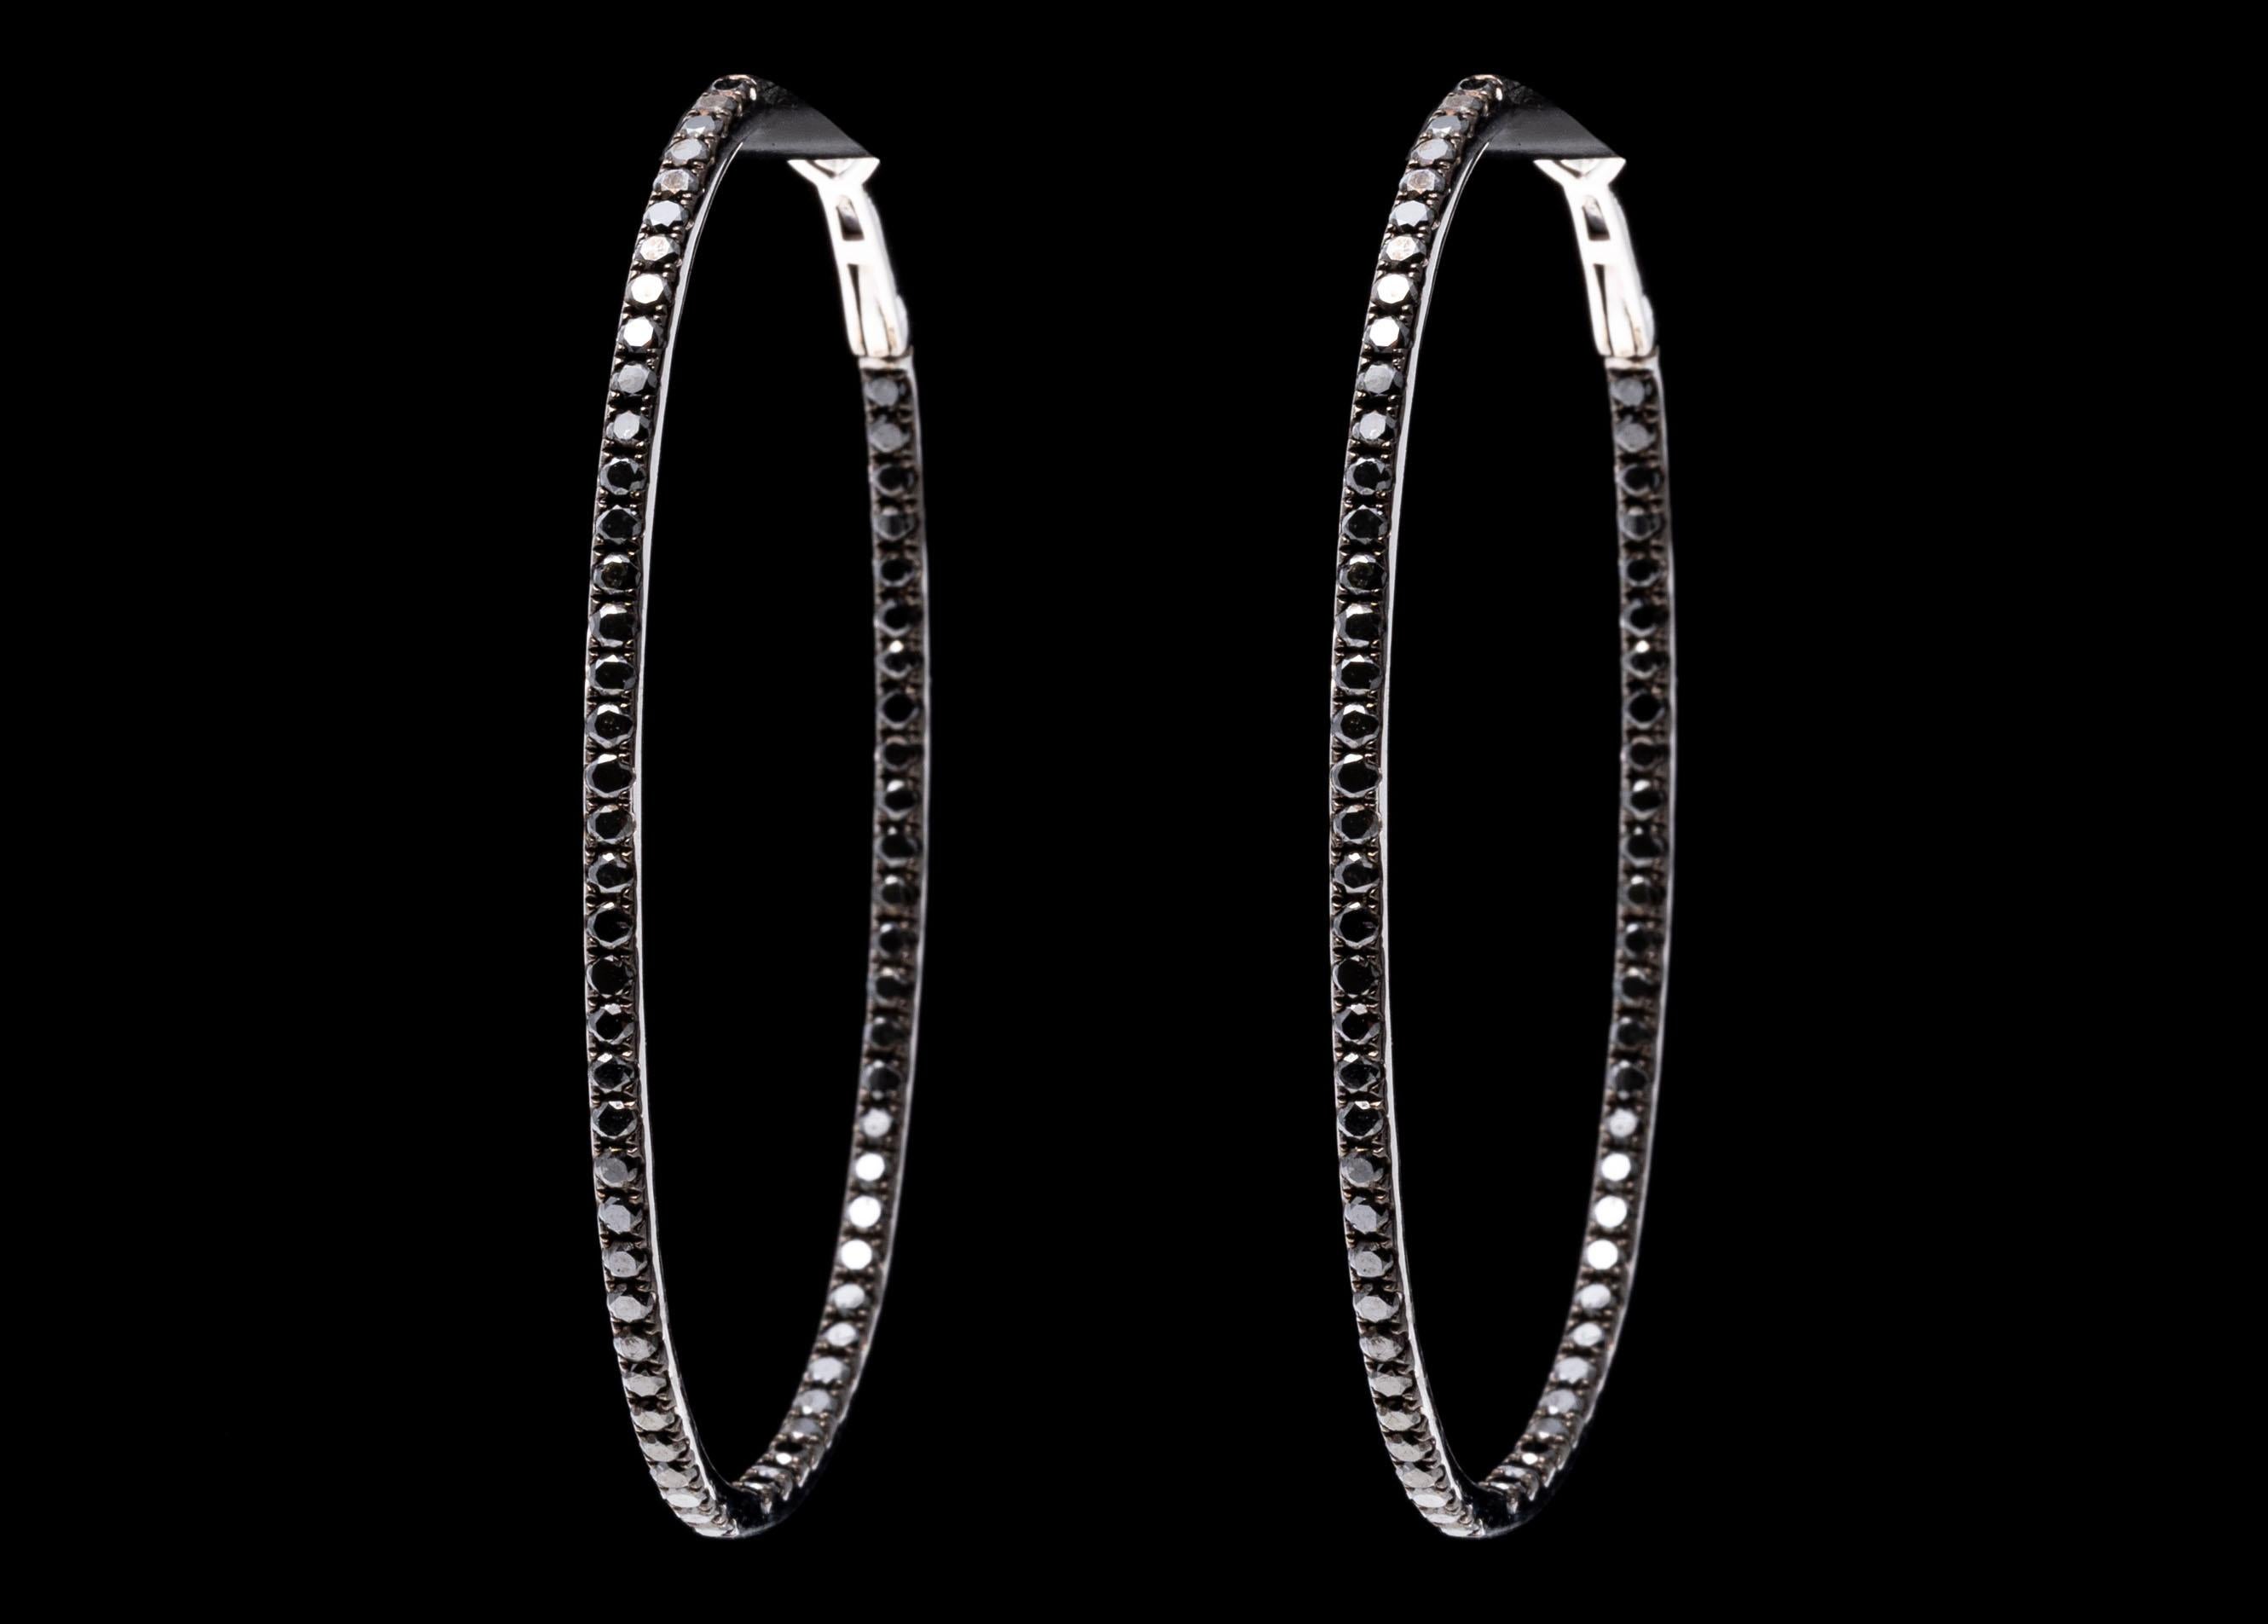 Elegant 14K White Gold and Black Diamond Elongated Hoop Earrings For Sale 1